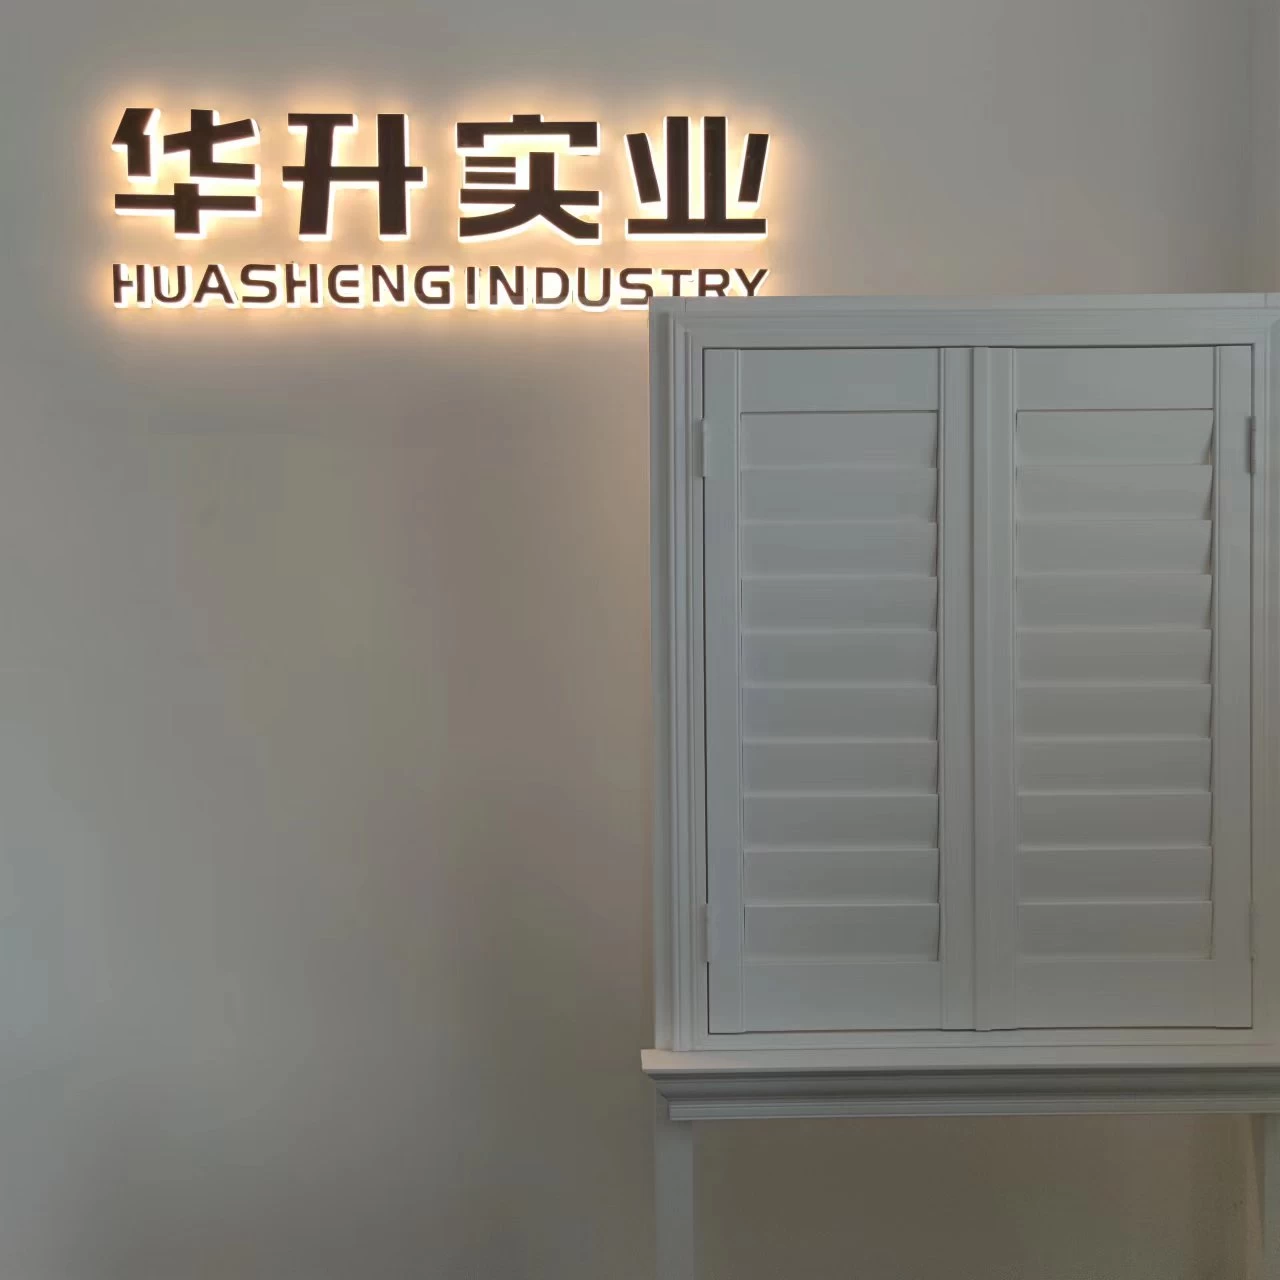 Heze Huasheng Shutter Sill Cover, China Shutter Sill Cover Supplier, Shutter Sill Cover manufacture